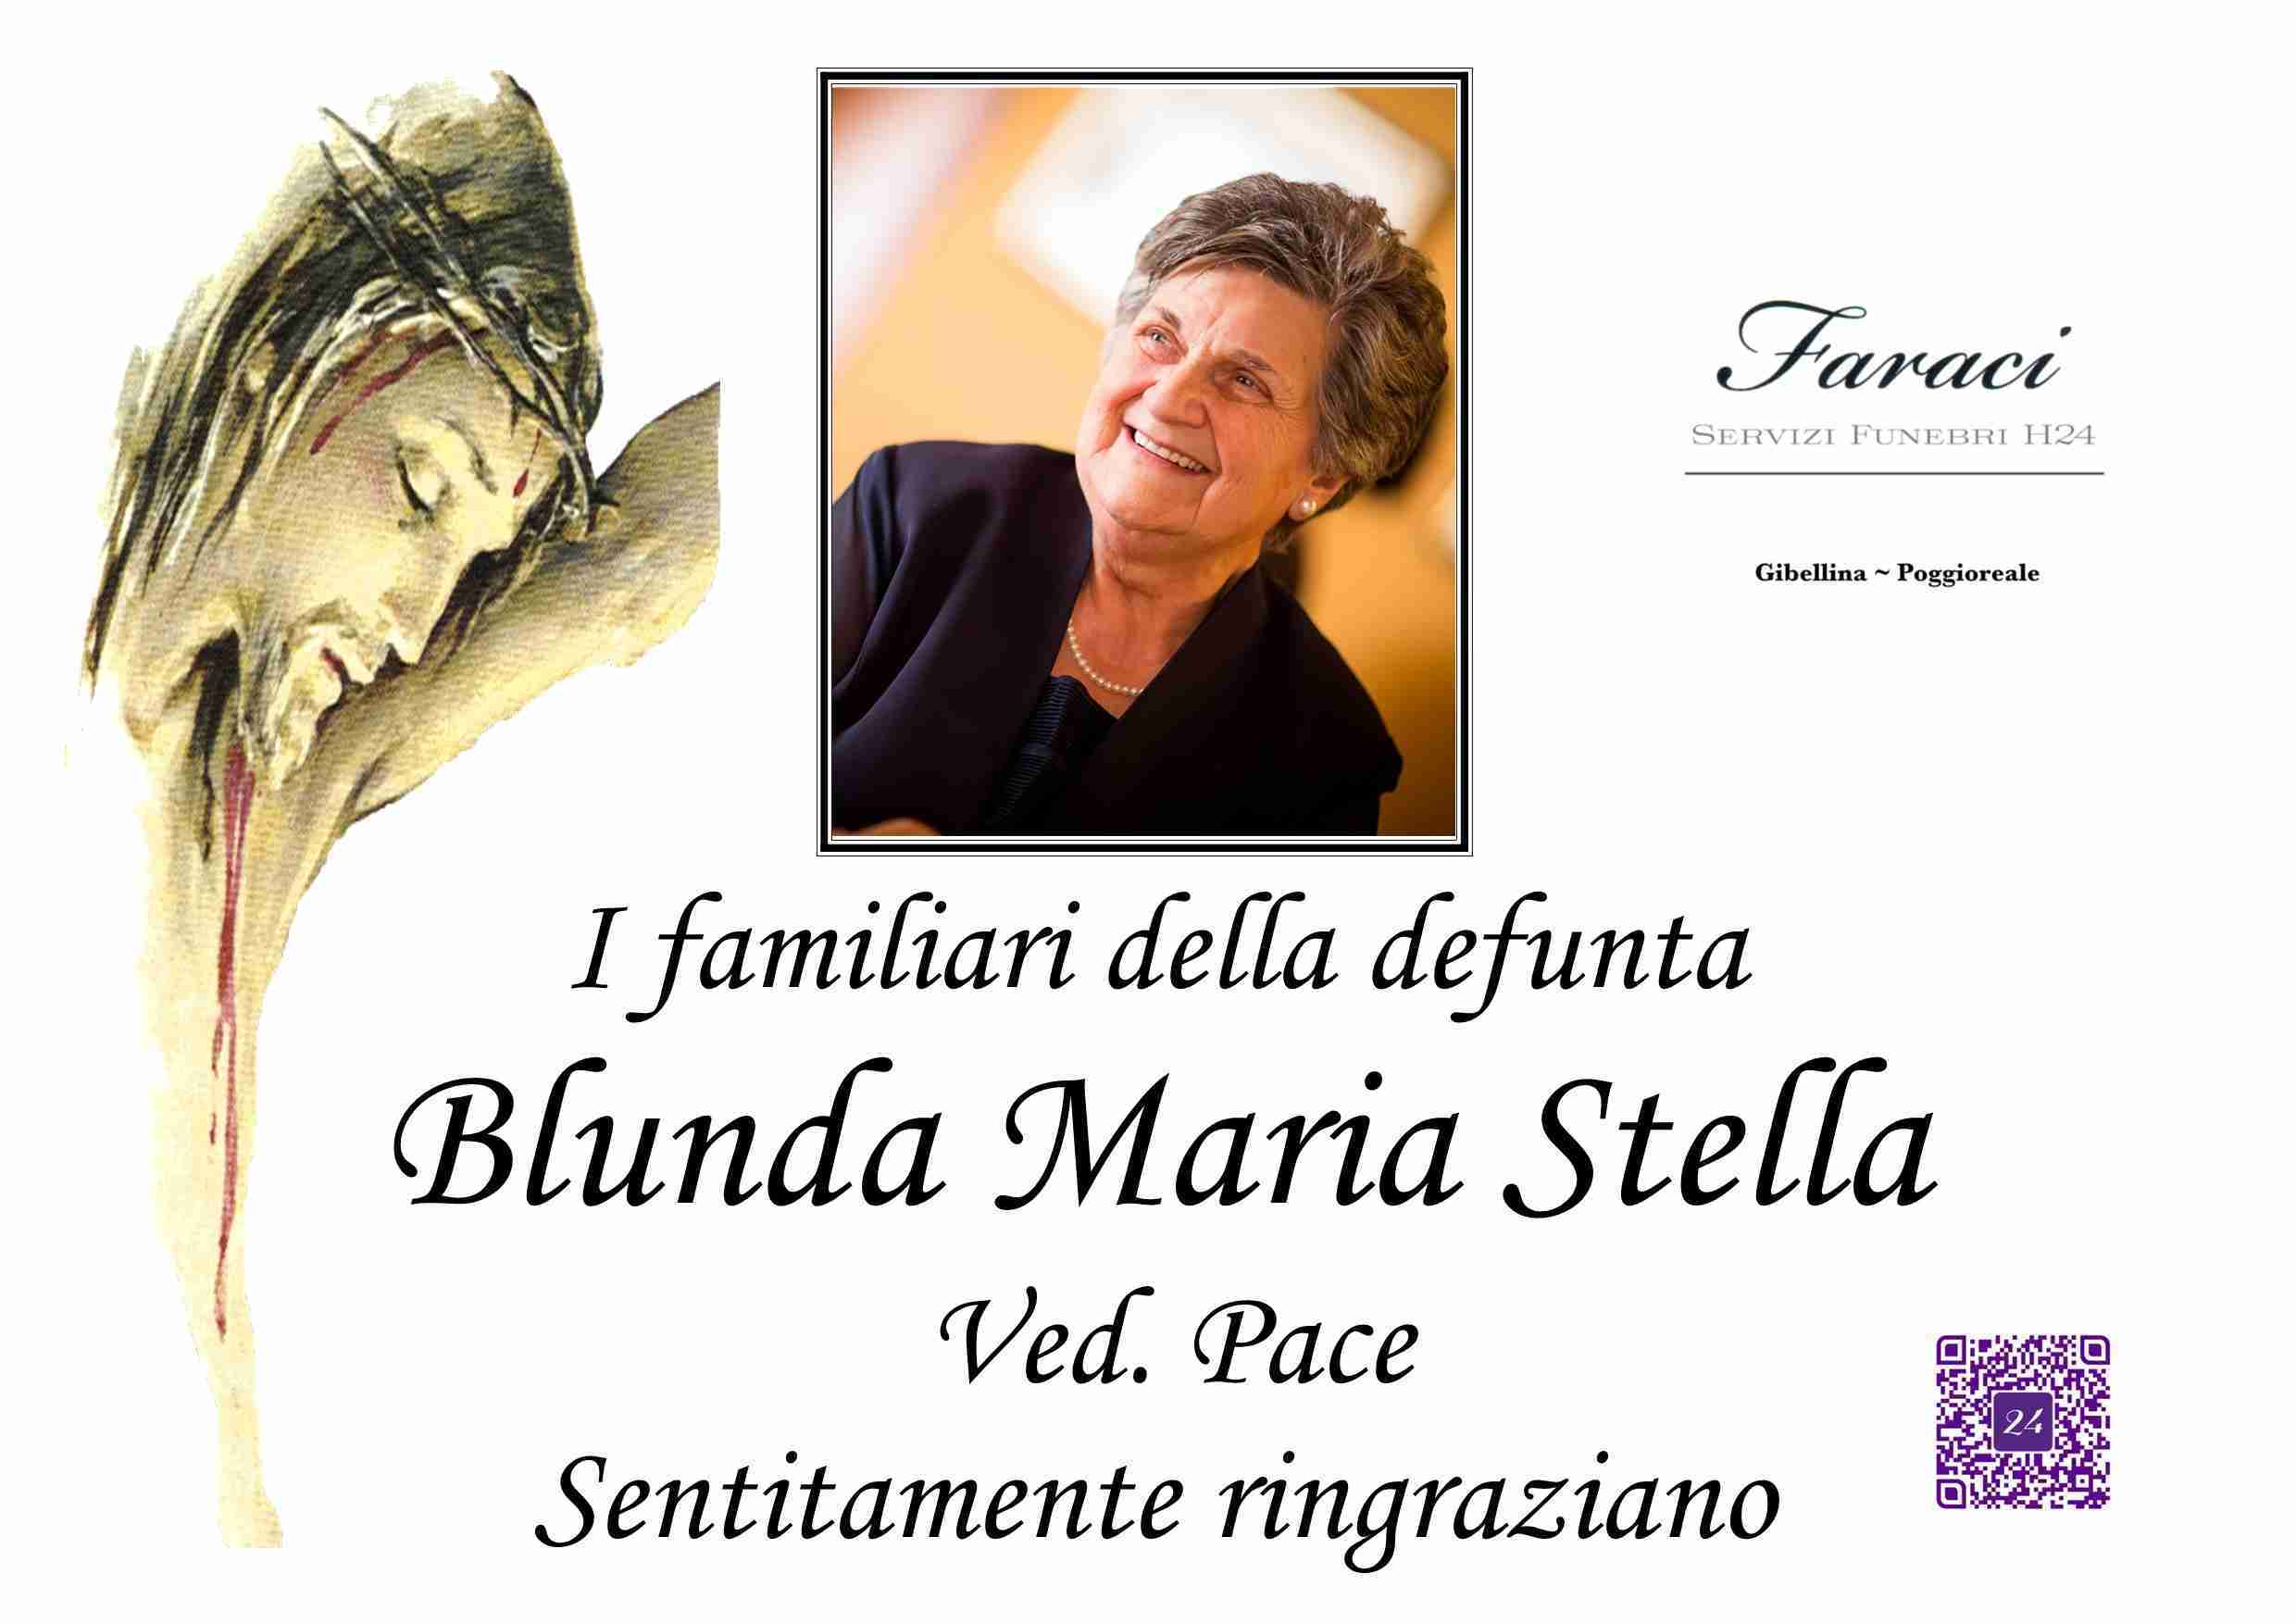 Maria Stella Blunda